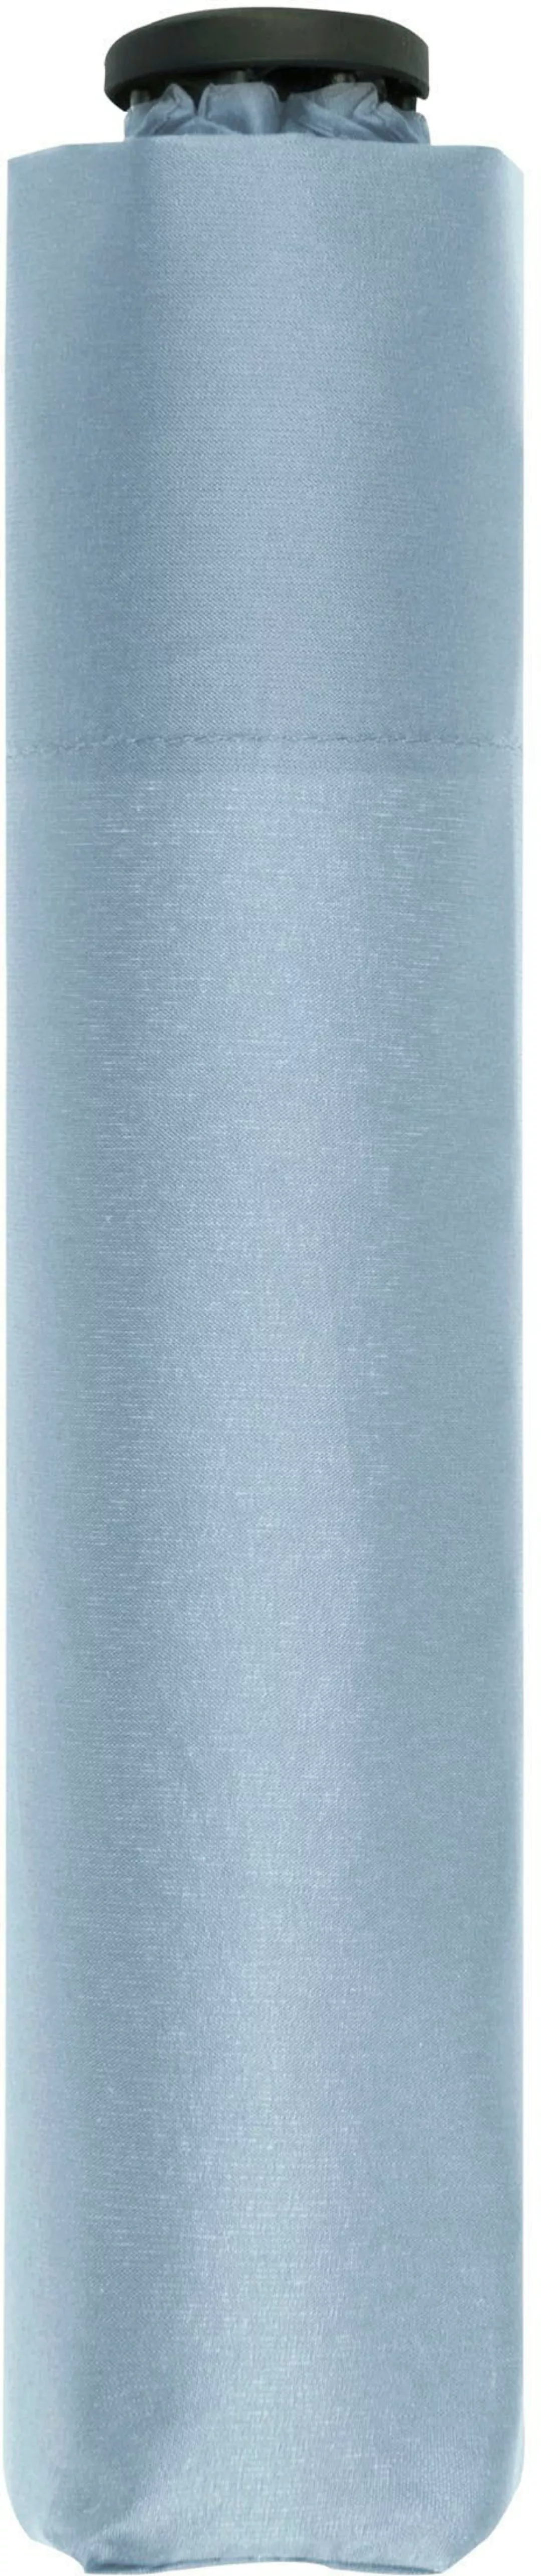 doppler Taschenregenschirm "zero,99 uni, ice blue" günstig online kaufen